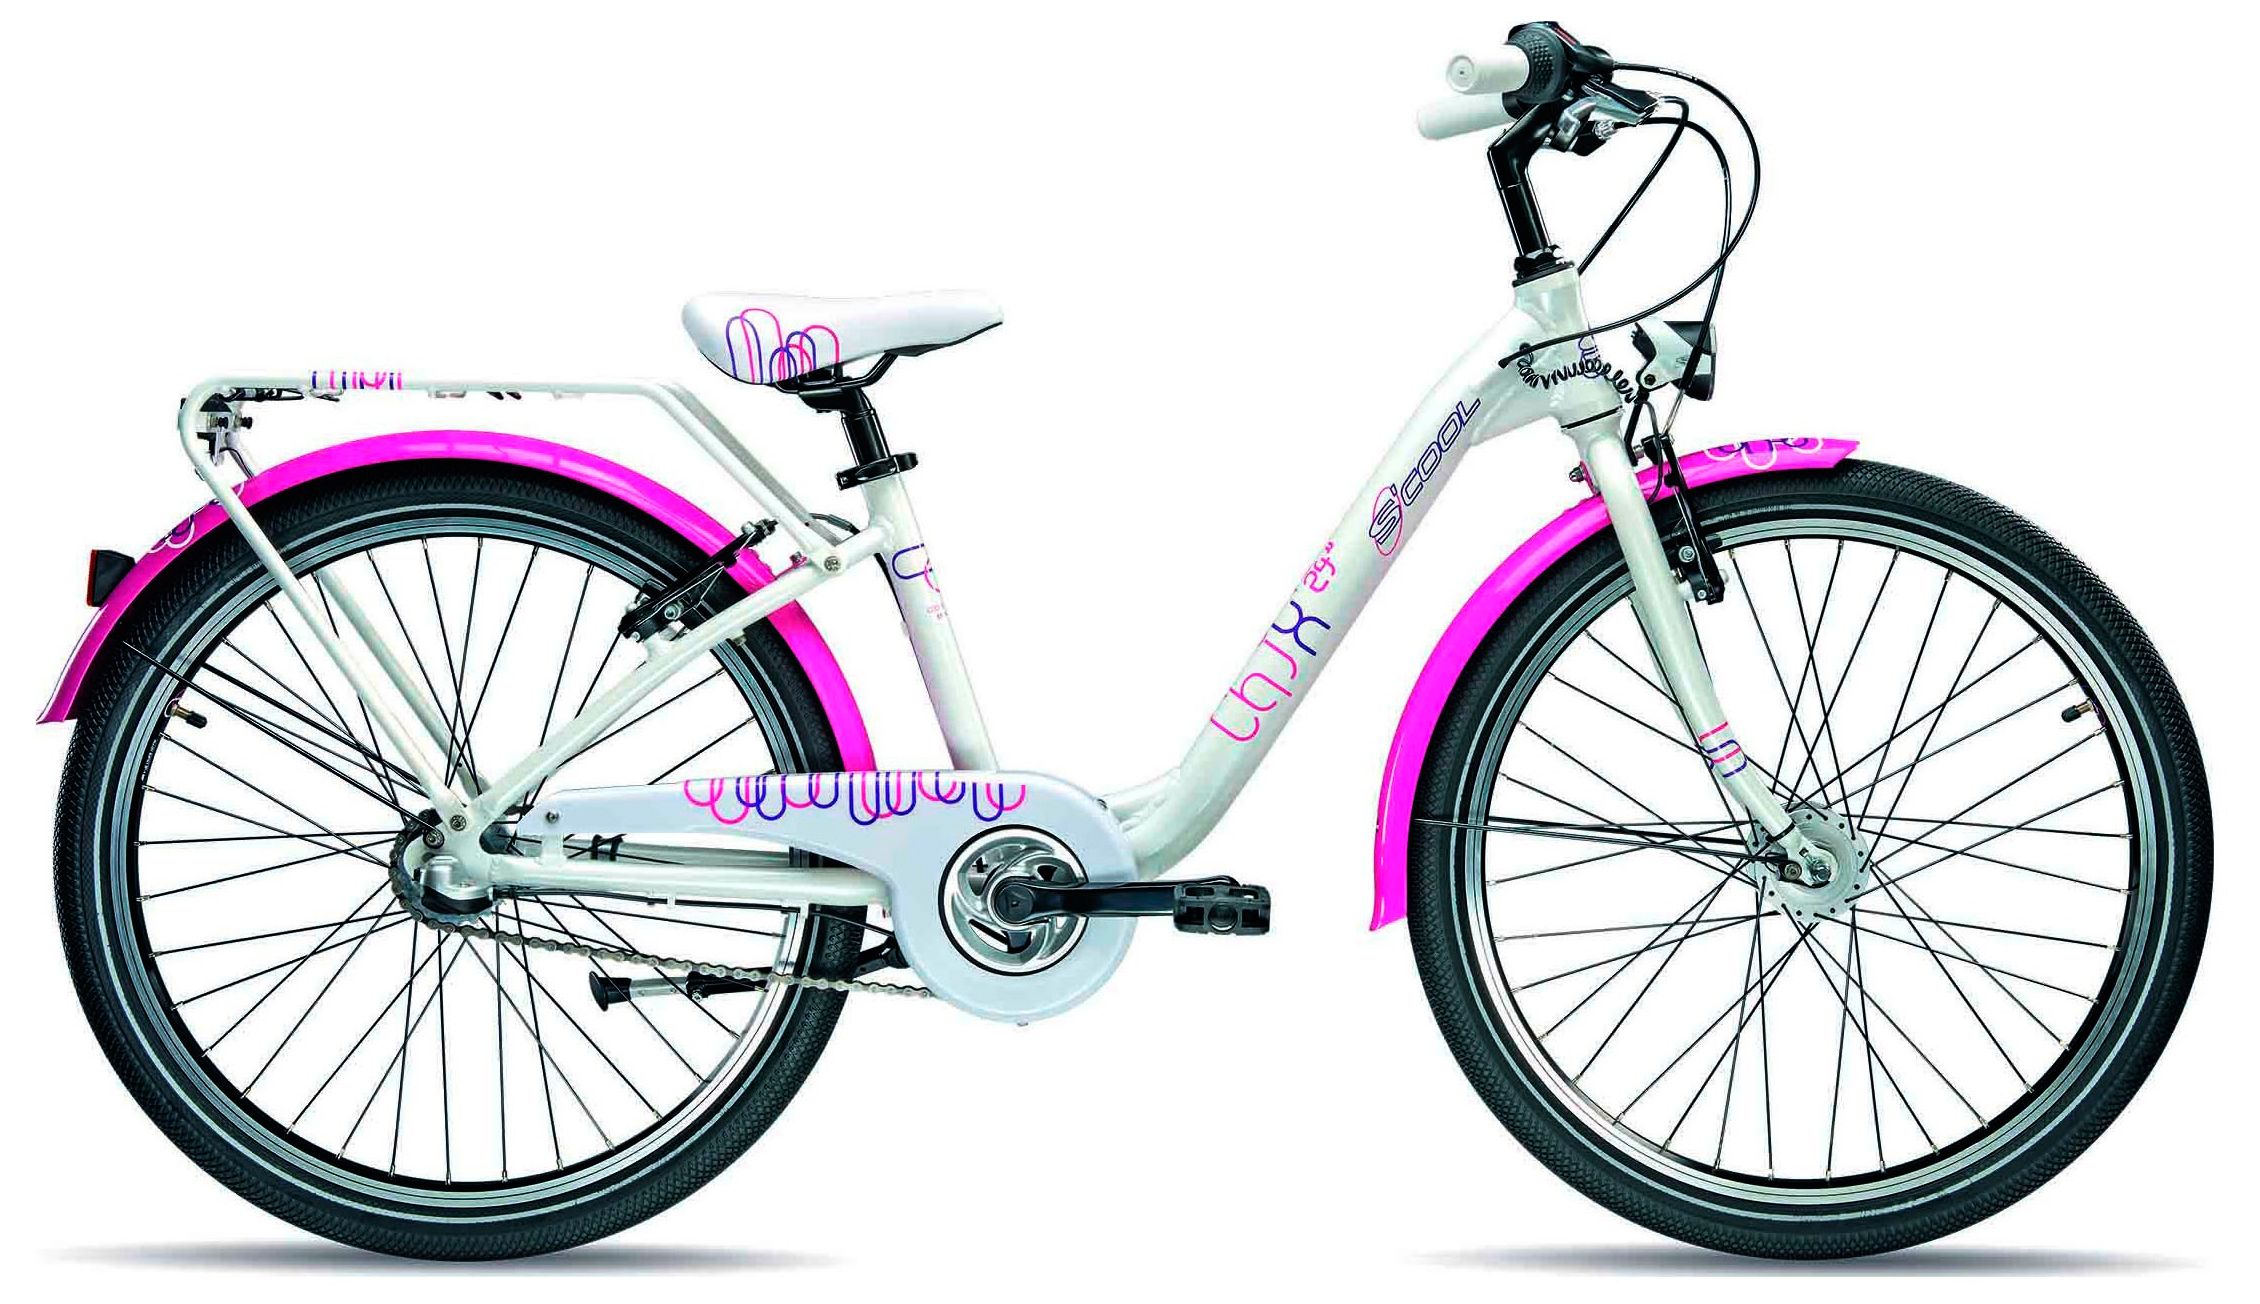  Отзывы о Детском велосипеде Scool chiX pro 24-3 2015